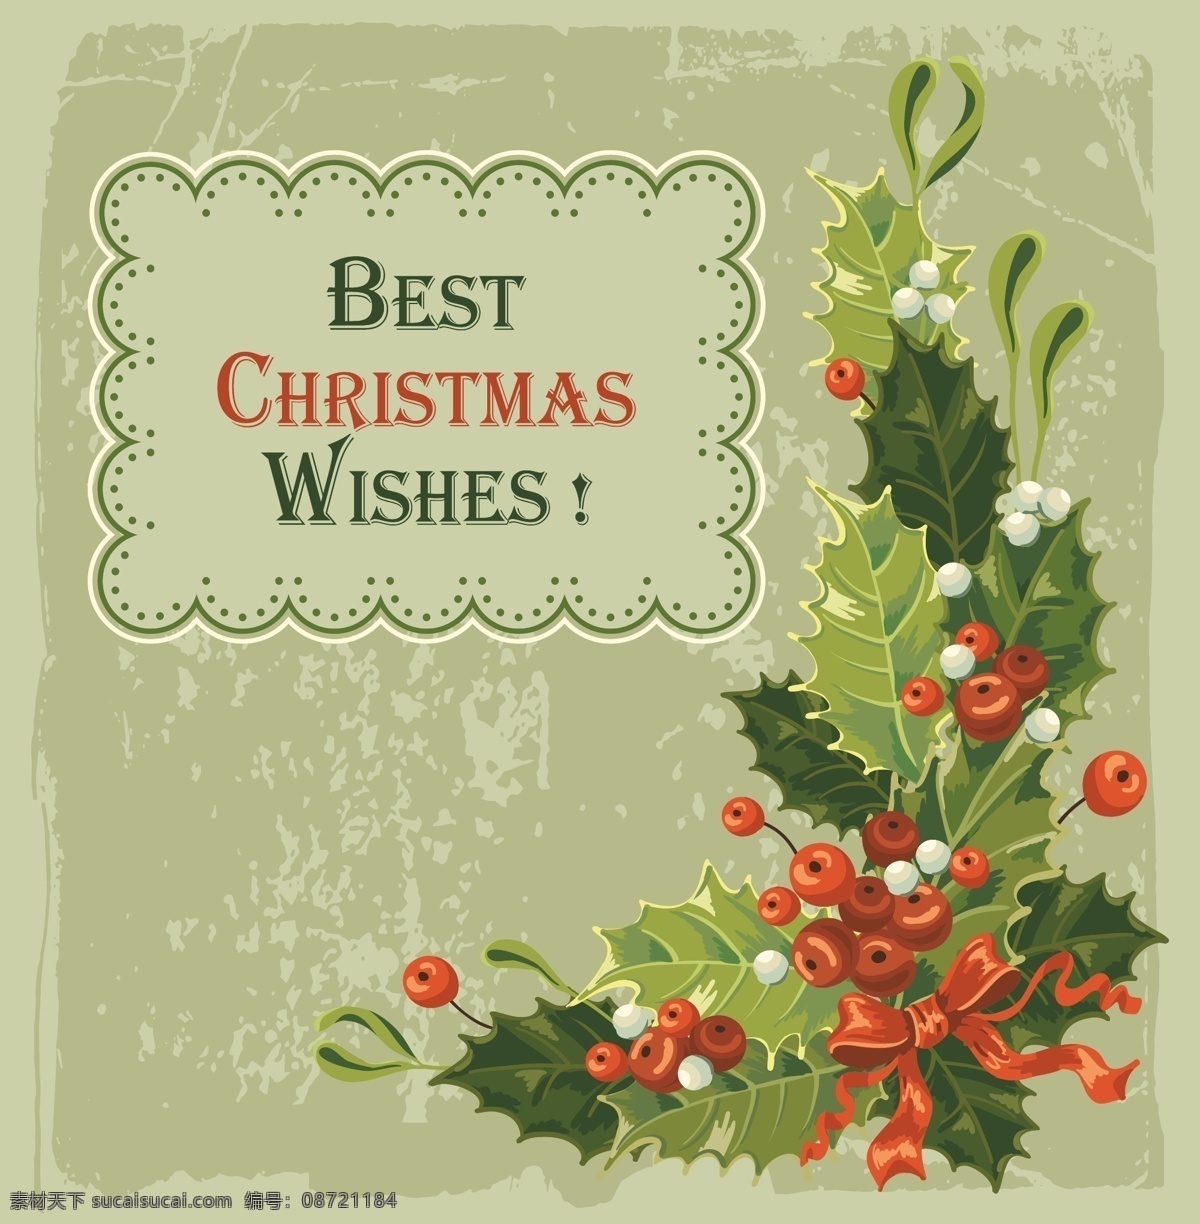 精美 圣诞节 背景 标签 贺卡 红果 模板 设计稿 圣诞果 矢量素材 丝带 节日大全 源文件 节日素材